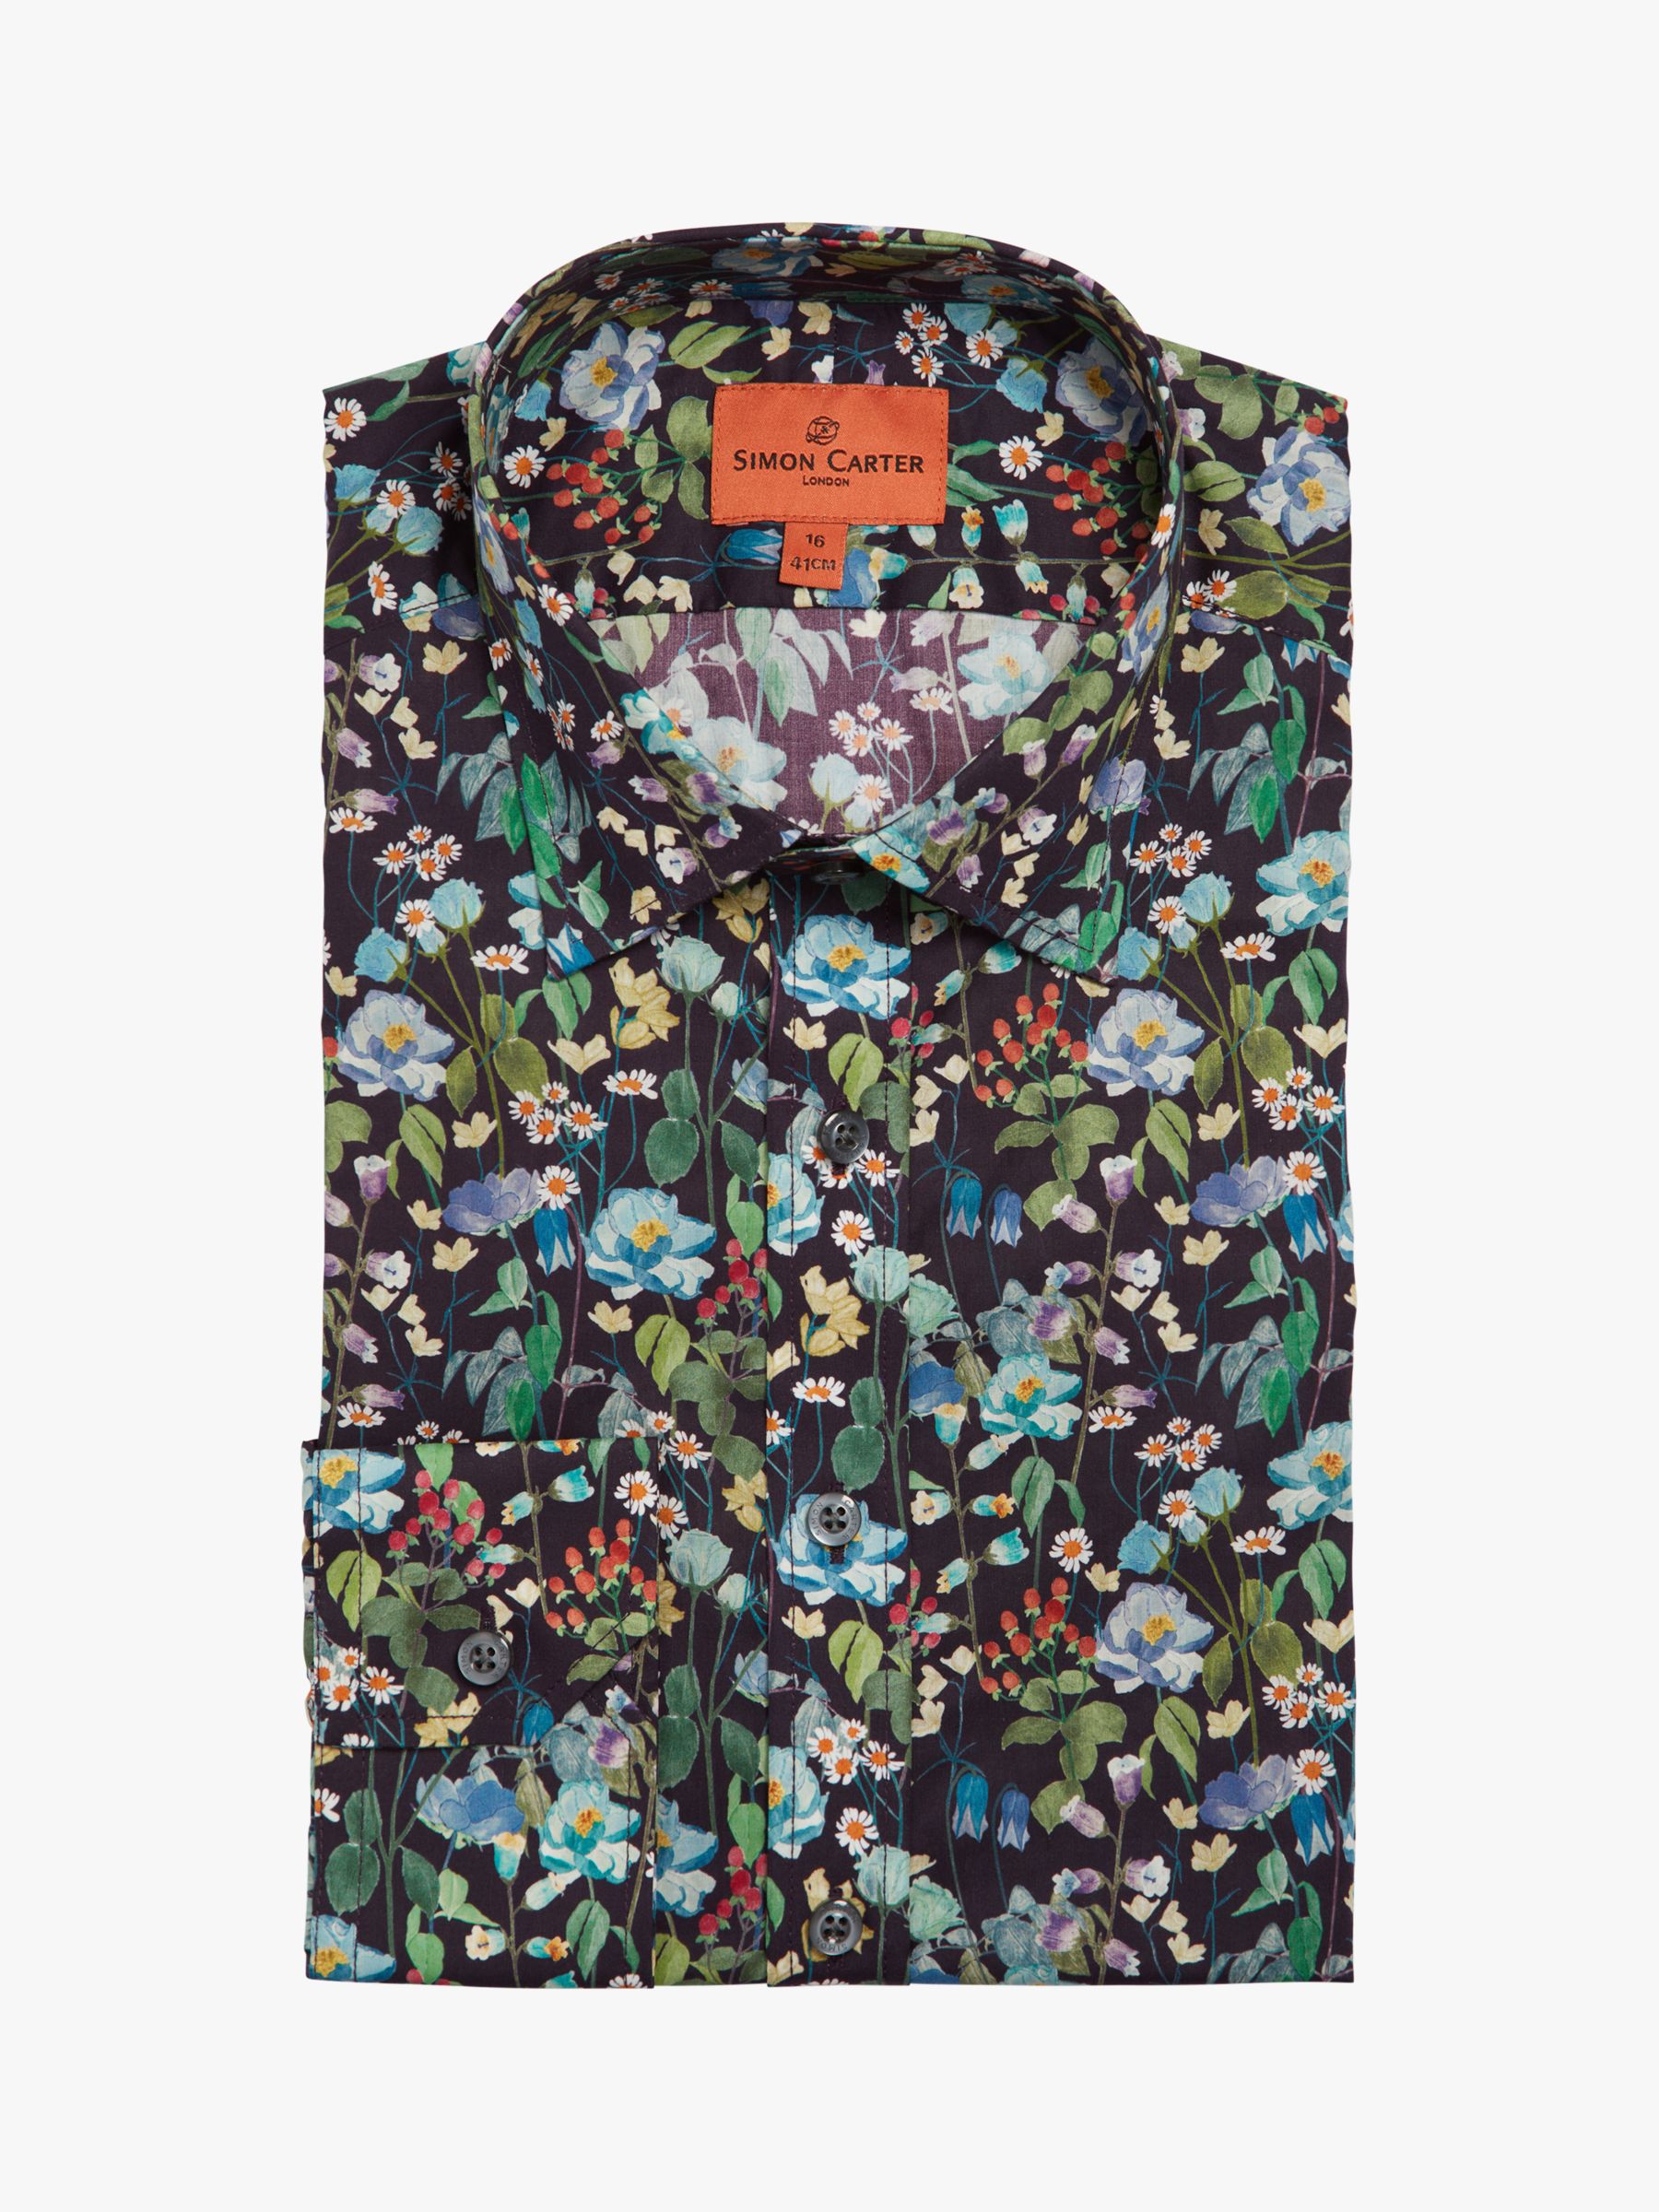 Simon Carter Liberty Fabric Fairytale Forest Shirt, Multi, 15R